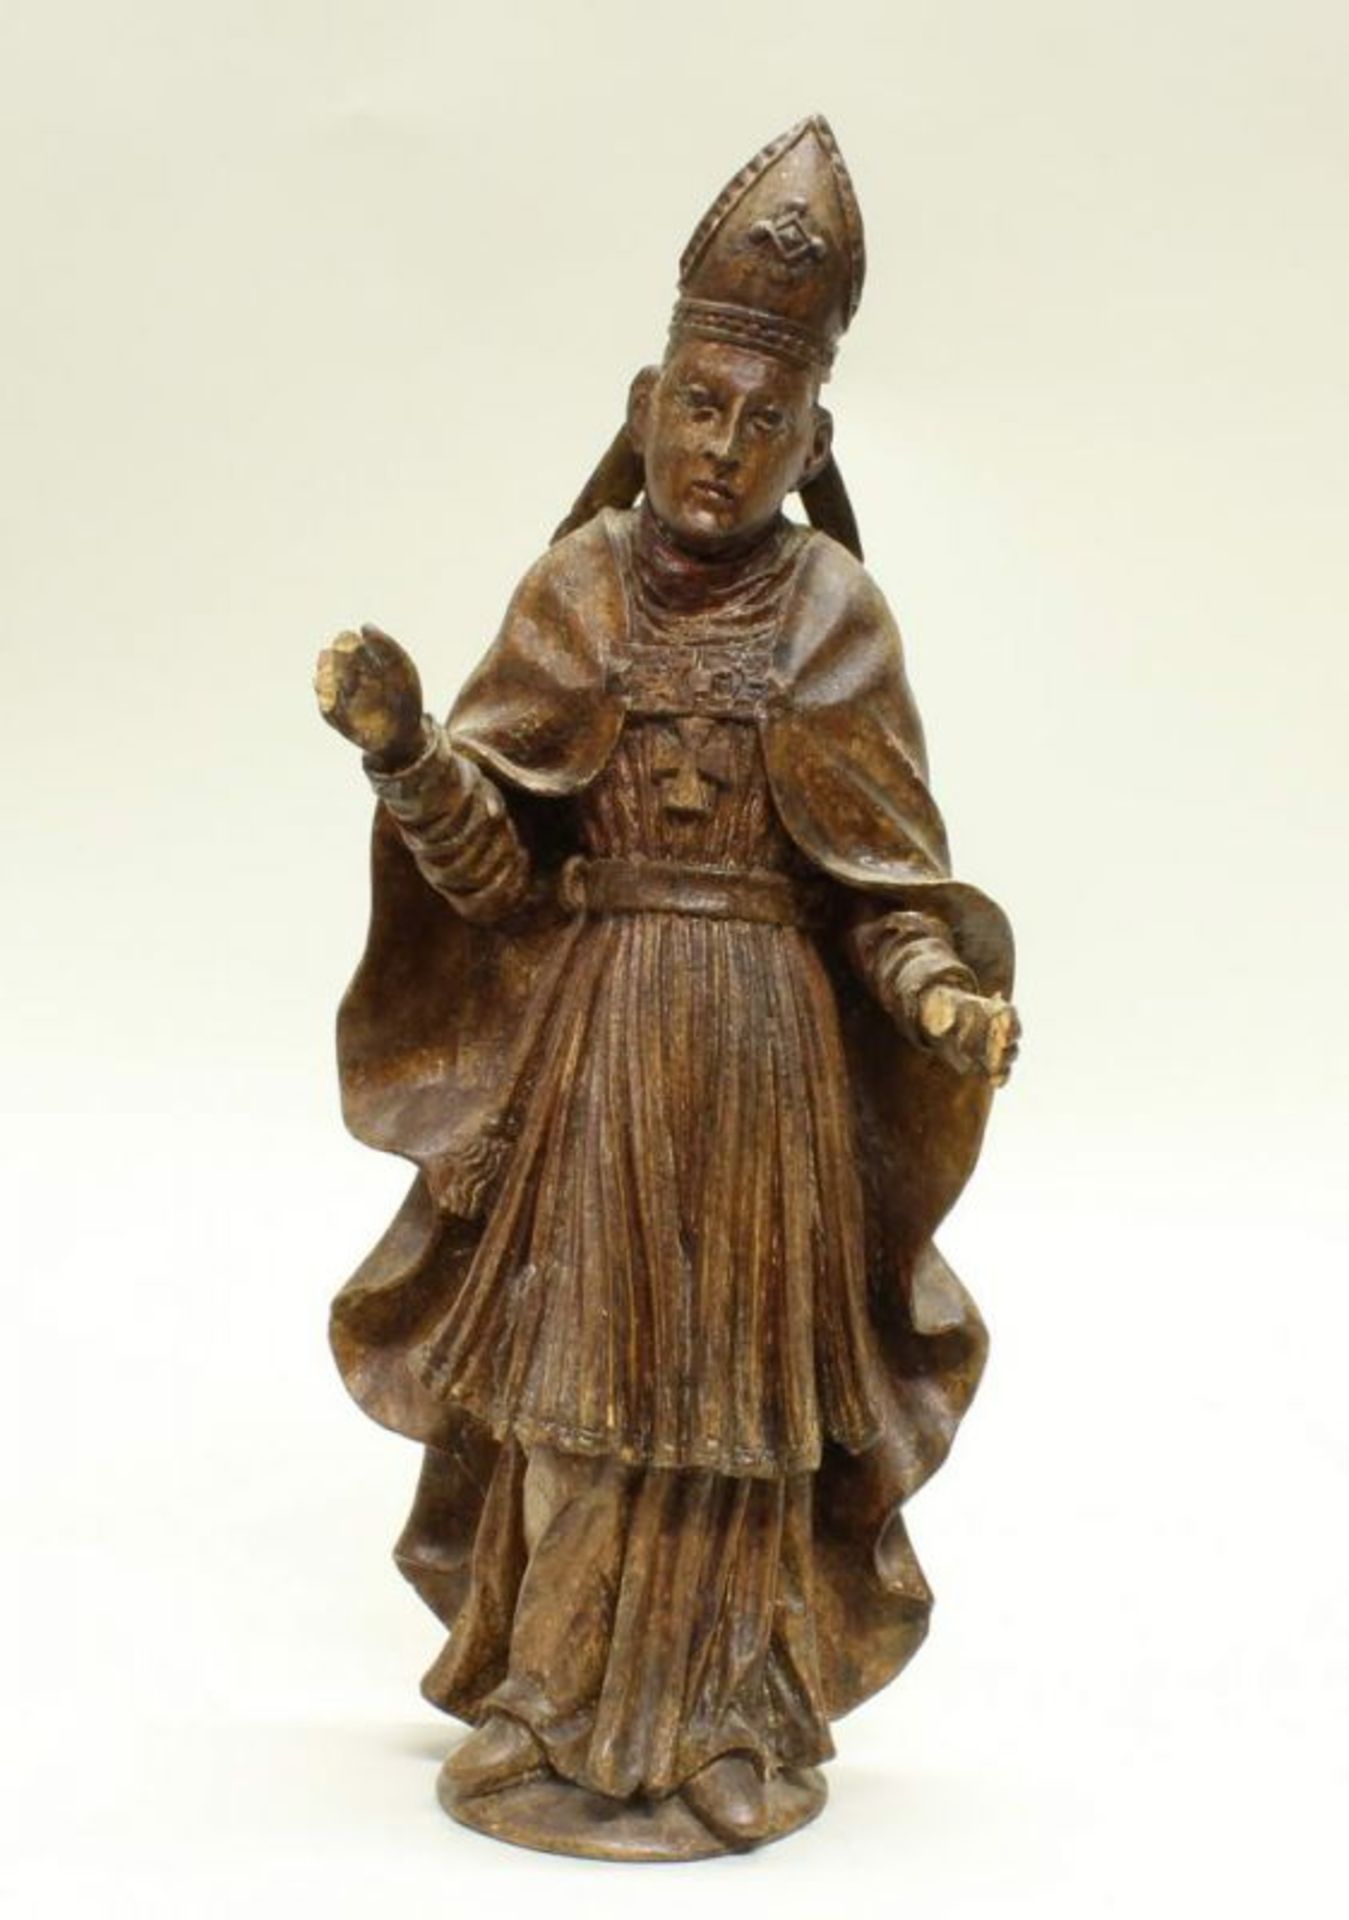 2 kleine Skulpturen, Holz geschnitzt, "Heilige Bischöfe", 34 cm bzw. 36 cm hoch, 18./19 Jh., - Image 2 of 7